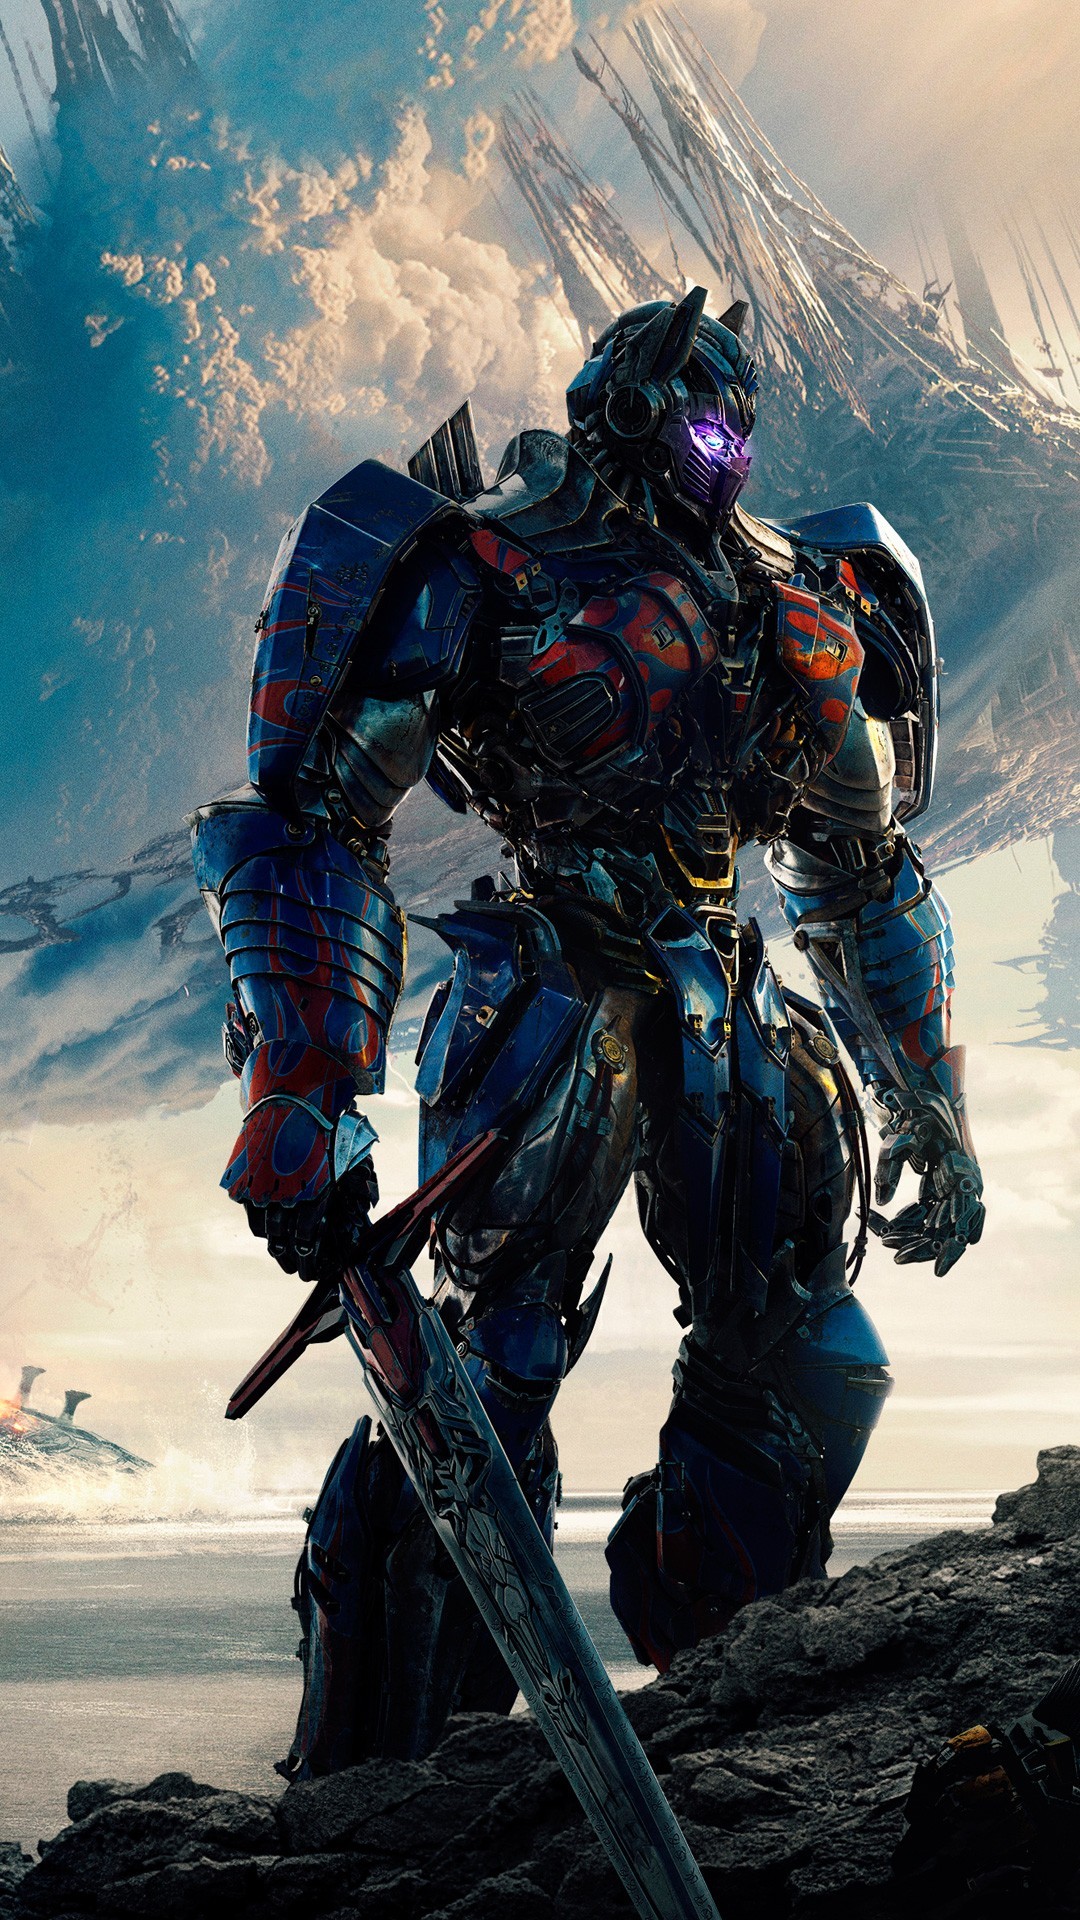 optimus-prime-transformers-film-series-heroes-wiki-fandom-powered